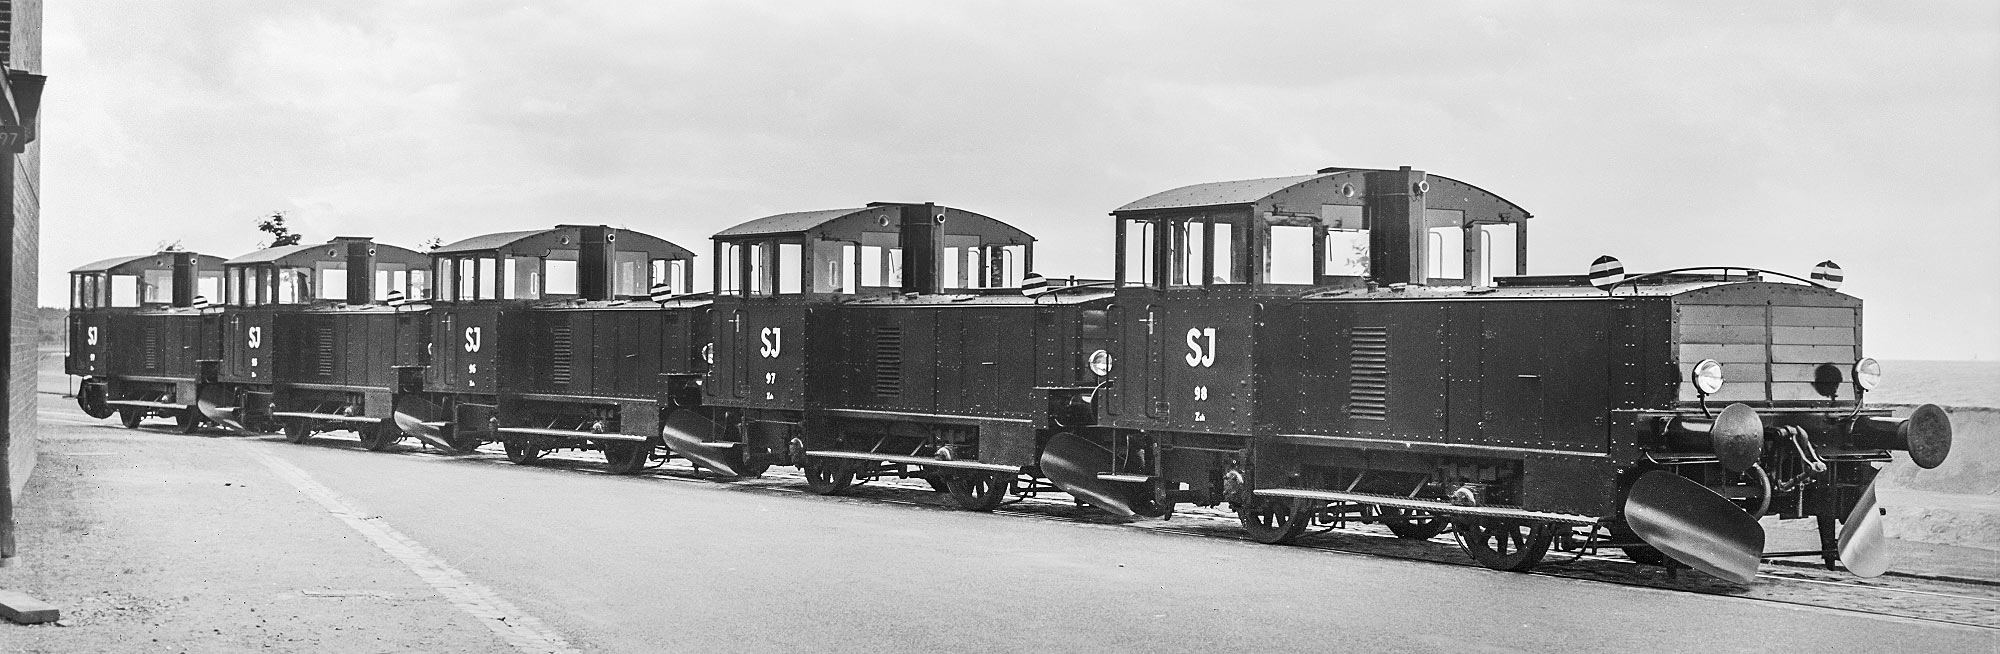 En rad med Zsh-lokomotorer 1939